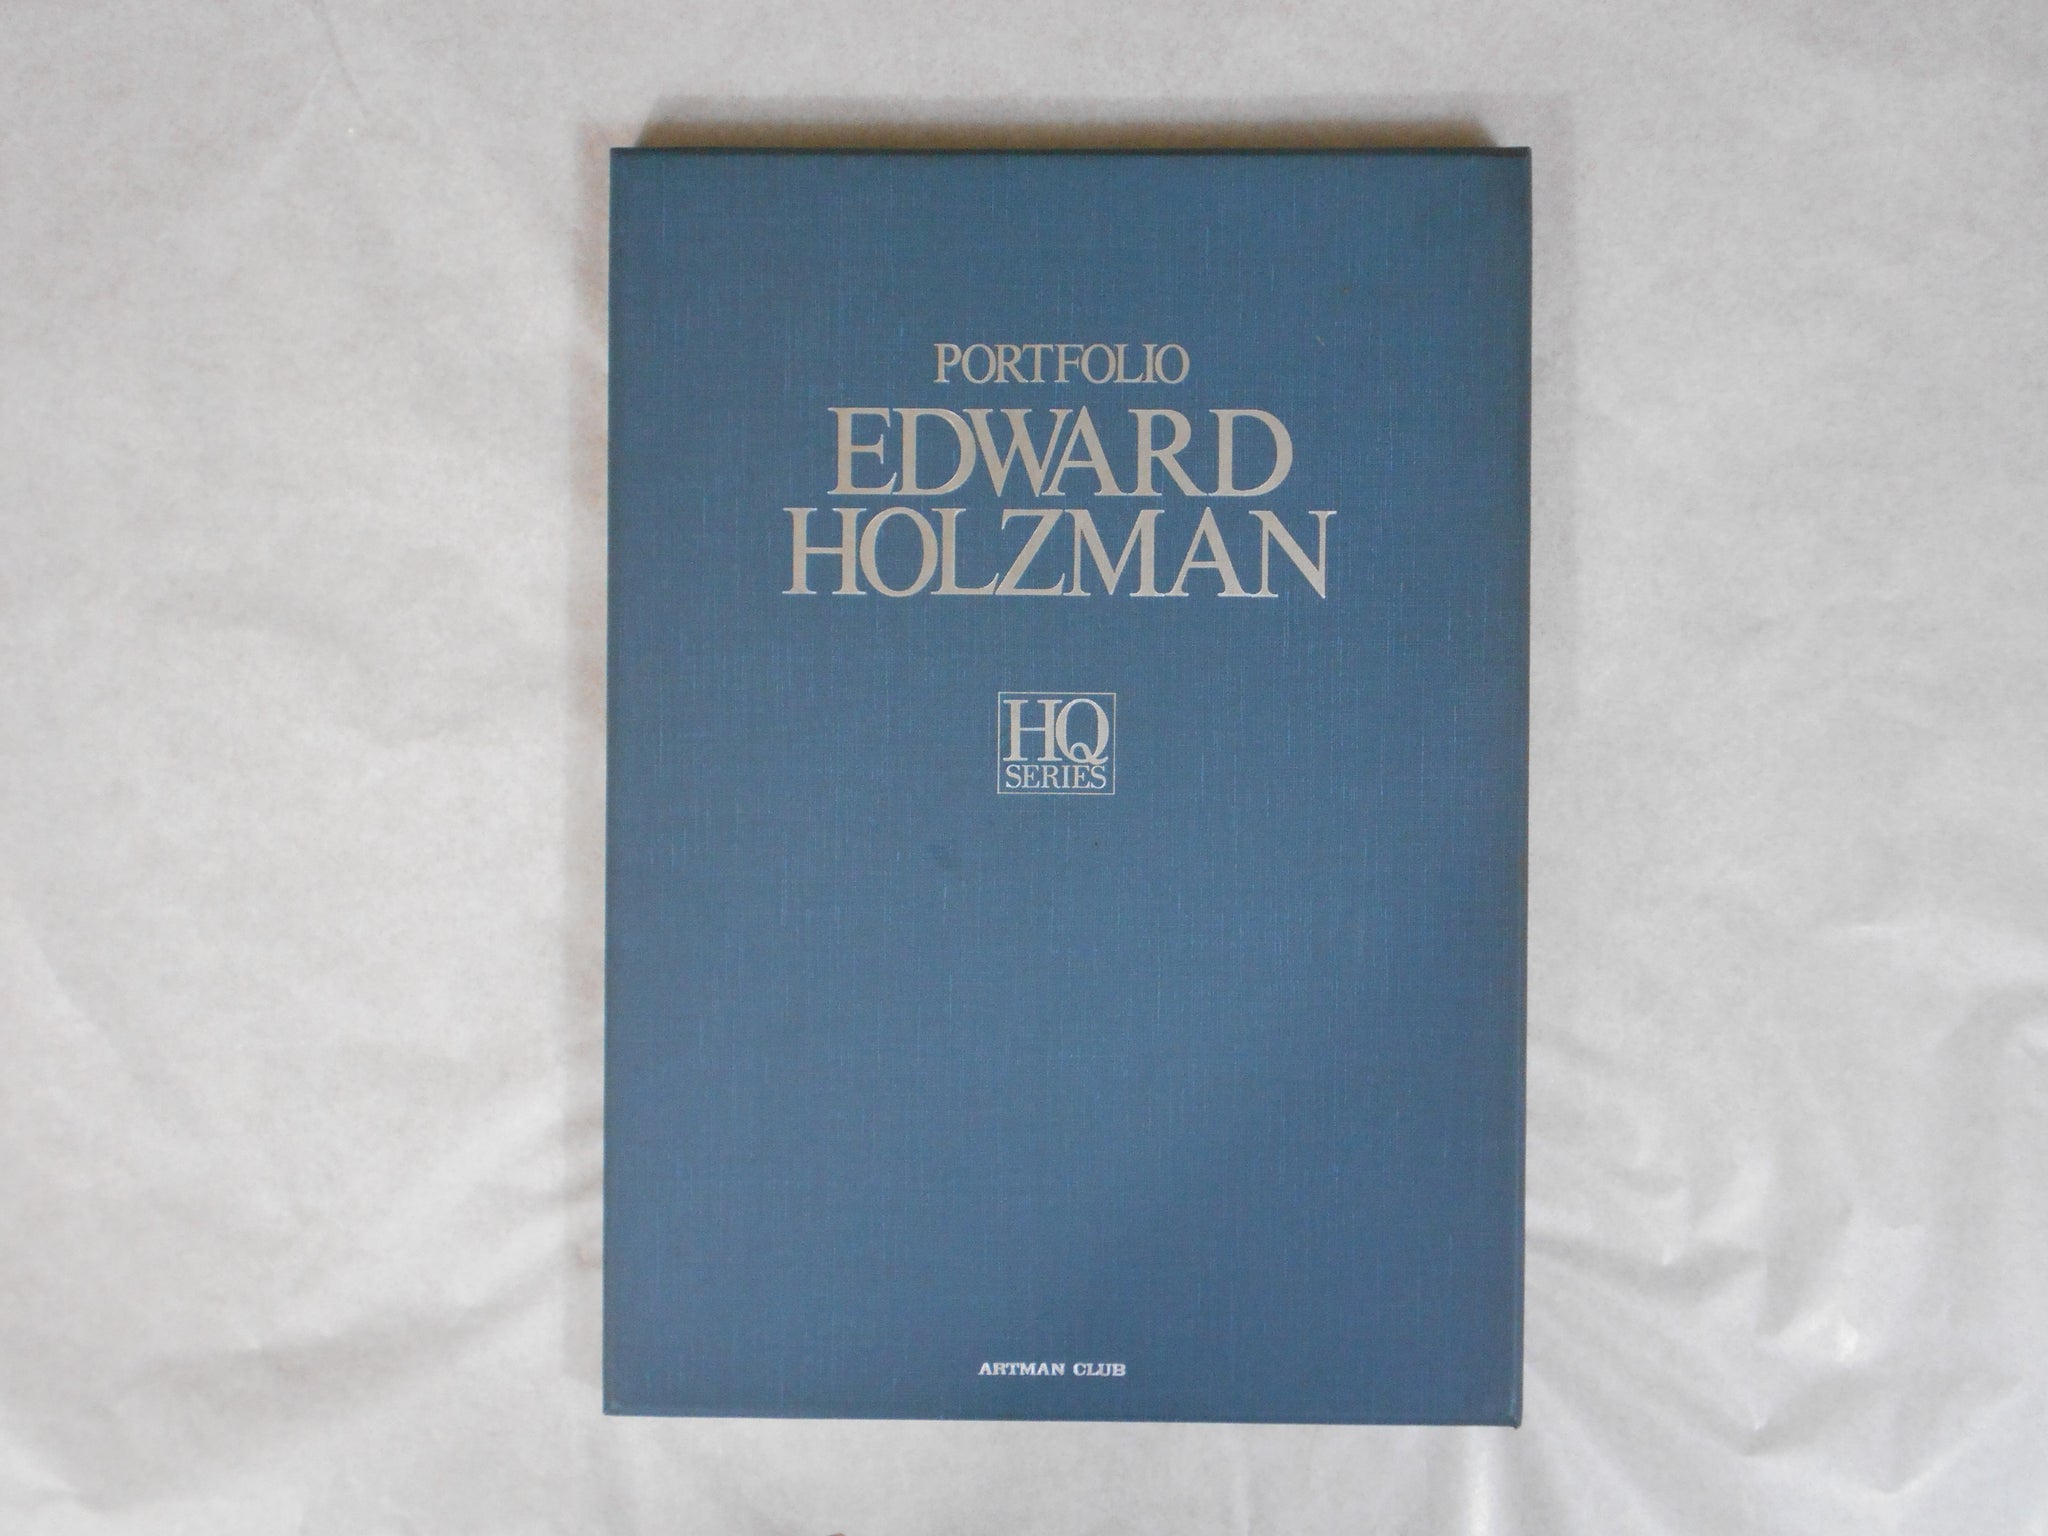 Edward Holzman HQ Portfolio | Edward Holzman | NGS Artman Club